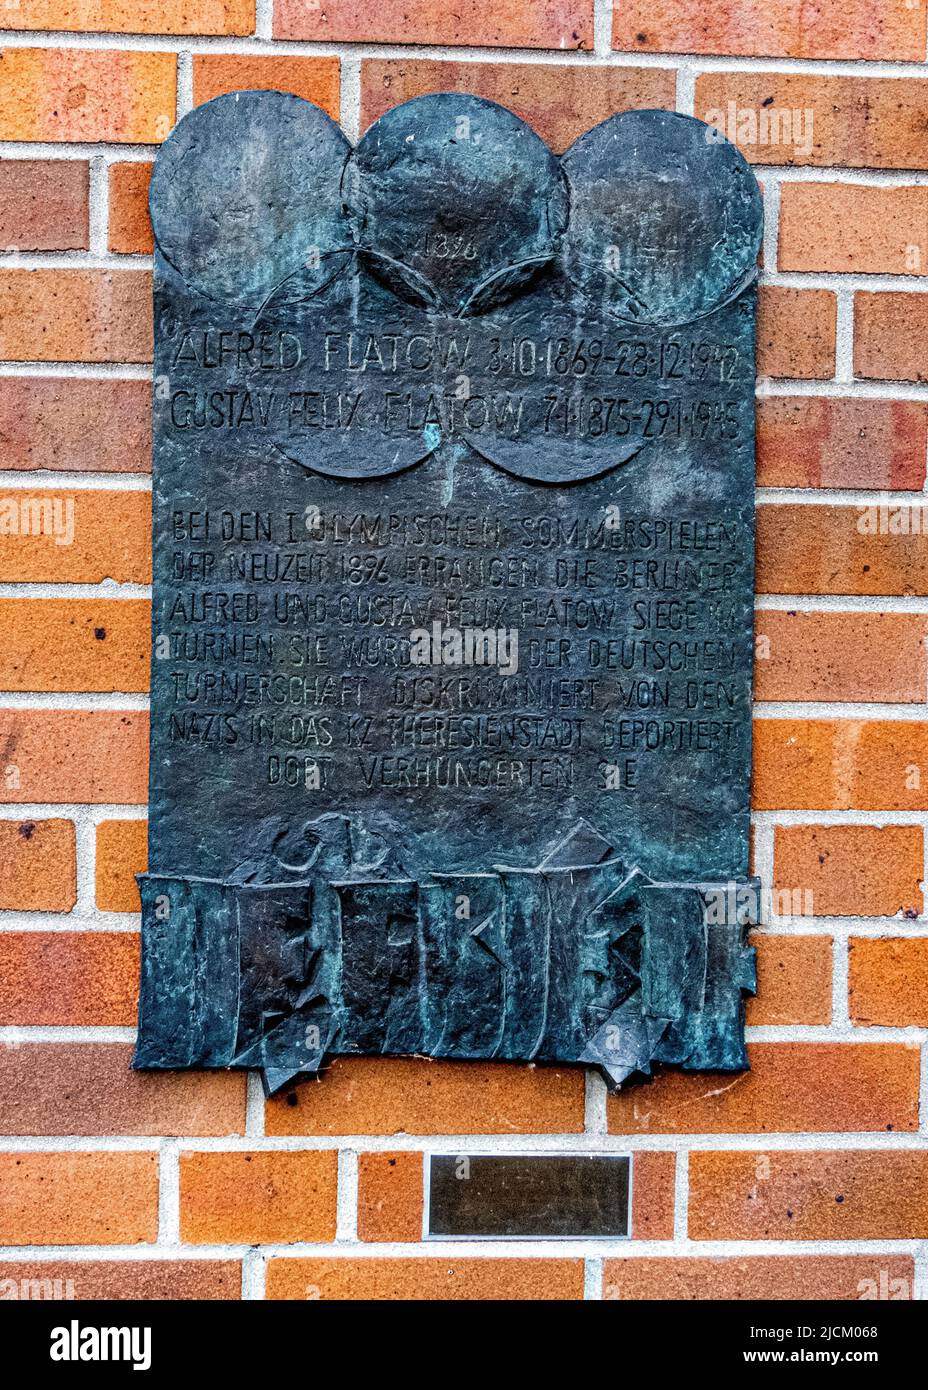 Memorial plaque,Gustav Felix Flatow,Jewish gymnast who died in 1945 in Theresienstadt concentration camp. Vor dem Schlesischen Tor 1, Kreuzberg,Berlin Stock Photo